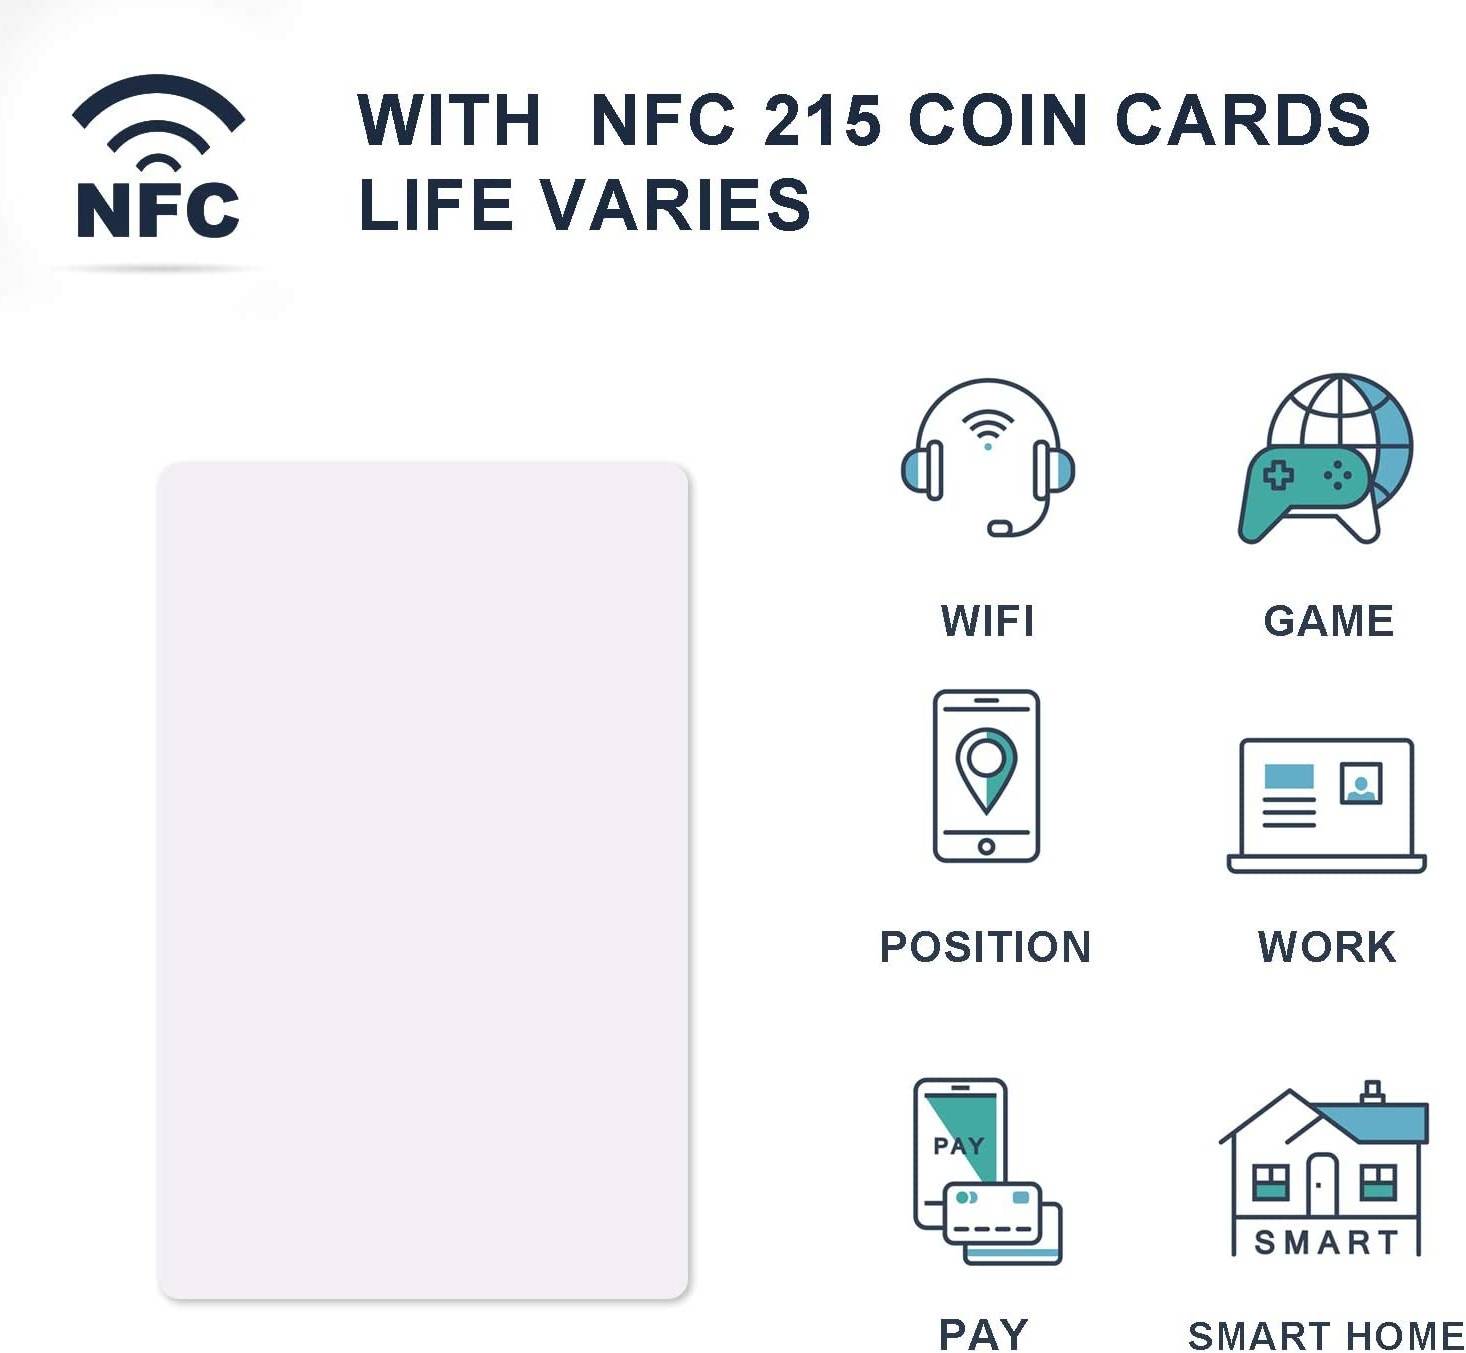 20 قطعة من بطاقات NFC، علامات NFC، بطاقة أعمال NFC، 215 بطاقة NFC Ntag215، بطاقات NFC فارغة، 504 بايت علامات NFC قابلة للبرمجة، iPhone متوافق مع الهواتف والأجهزة المحمولة التي تدعم NFC 